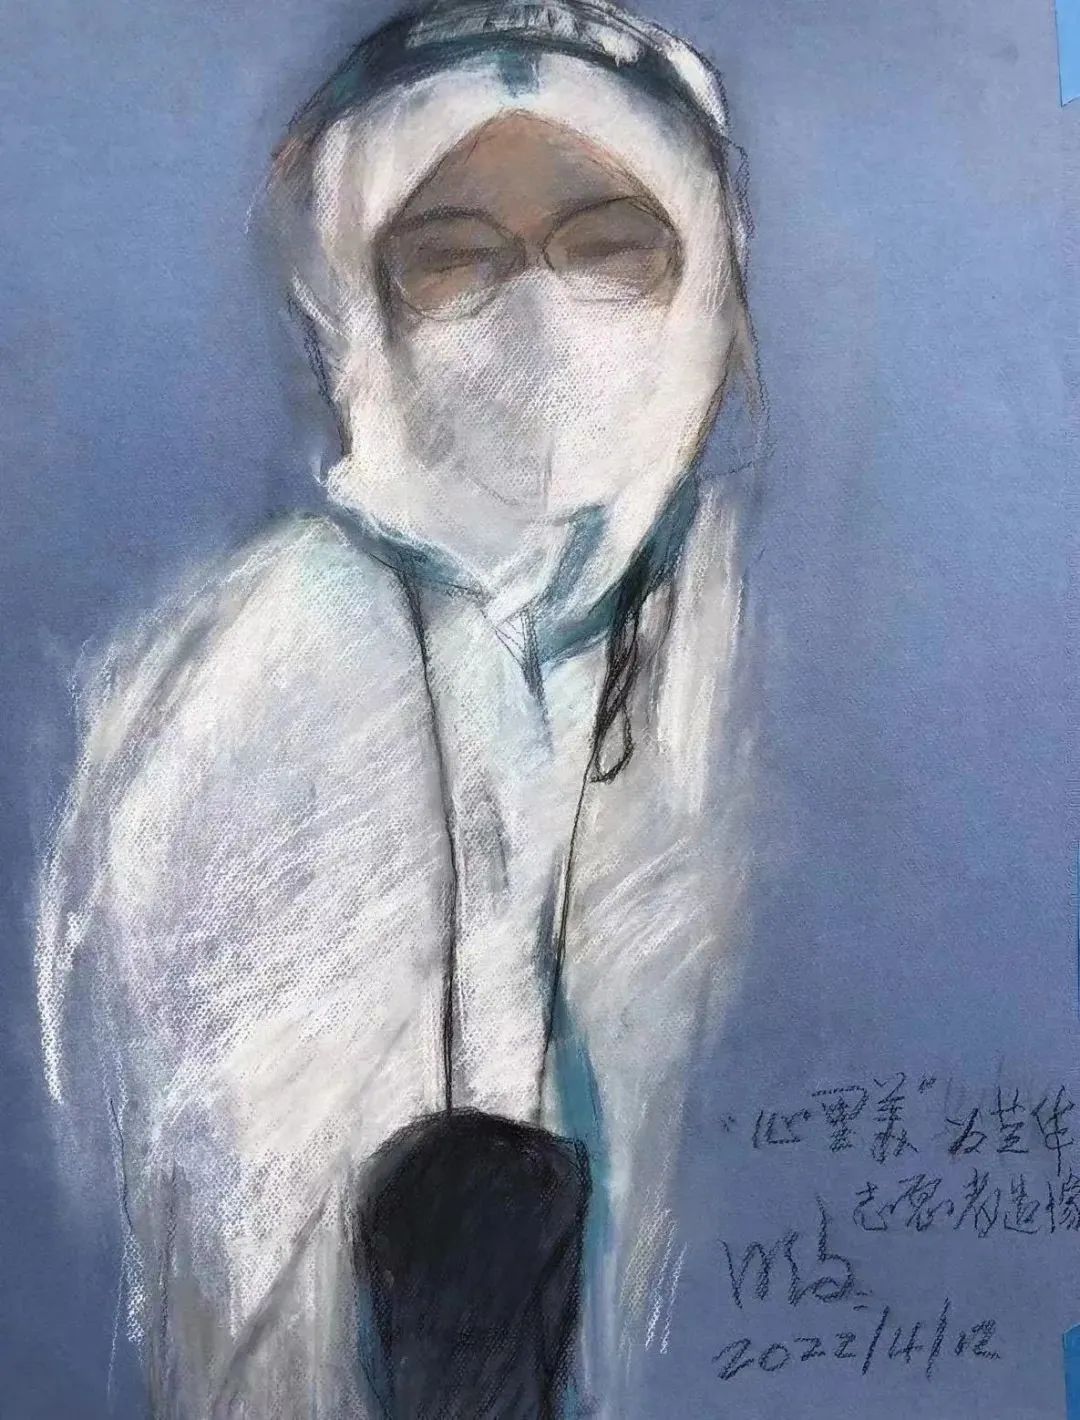  张芝华做志愿者时先生为她画的像  参考府上：新民周刊